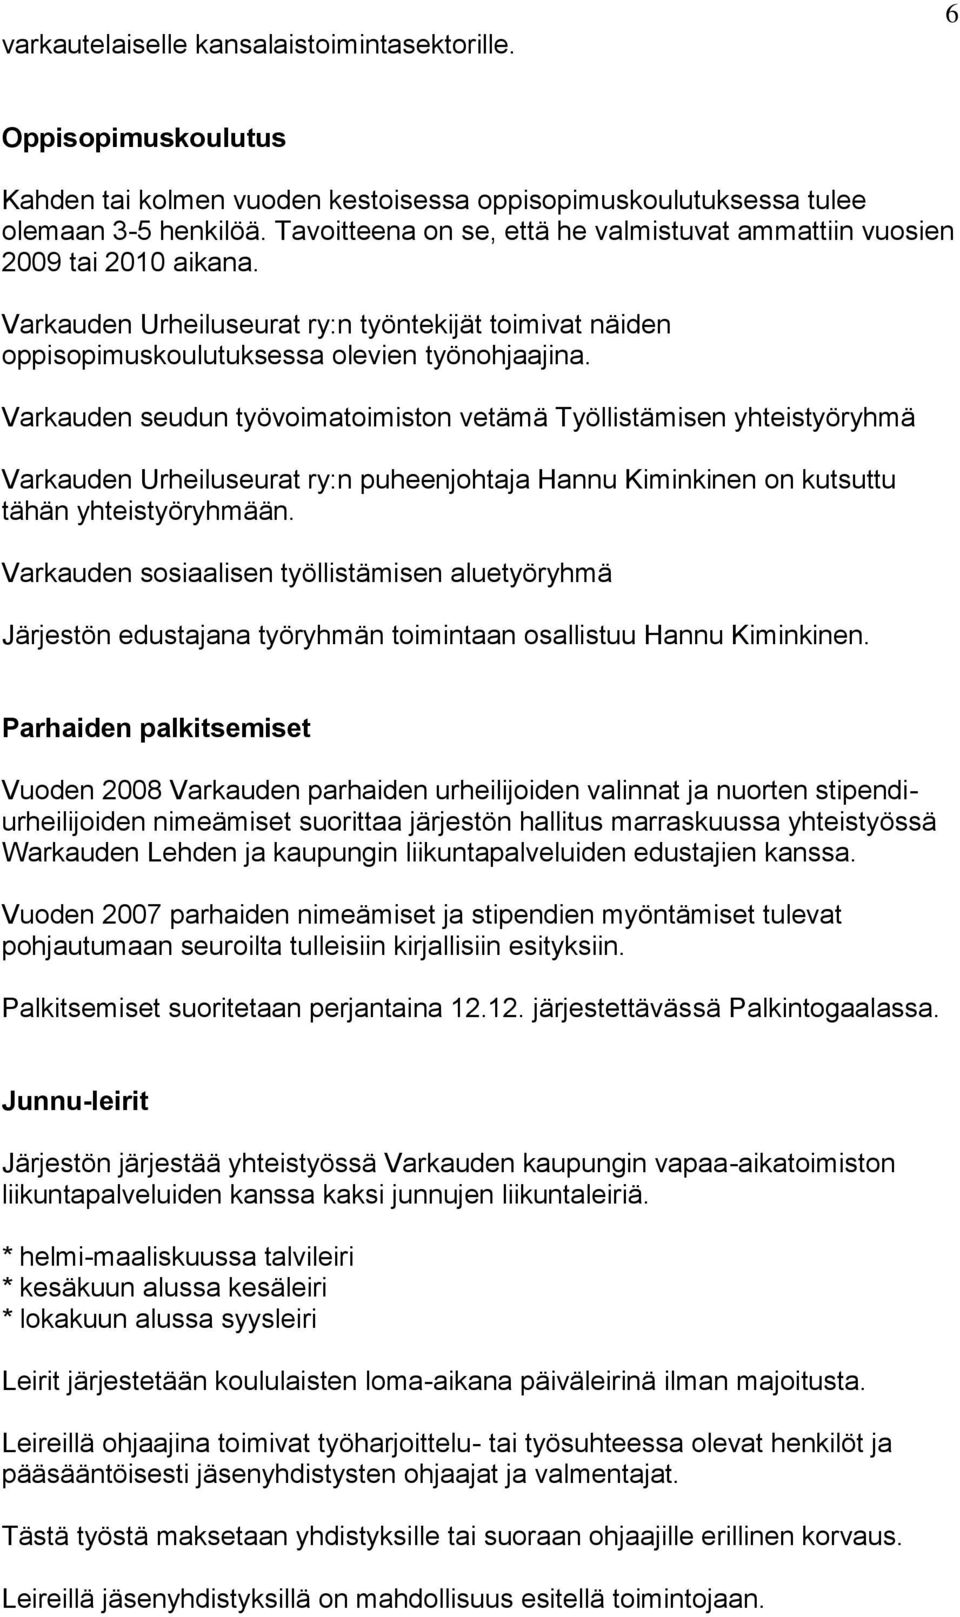 Varkauden seudun työvoimatoimiston vetämä Työllistämisen yhteistyöryhmä Varkauden Urheiluseurat ry:n puheenjohtaja Hannu Kiminkinen on kutsuttu tähän yhteistyöryhmään.